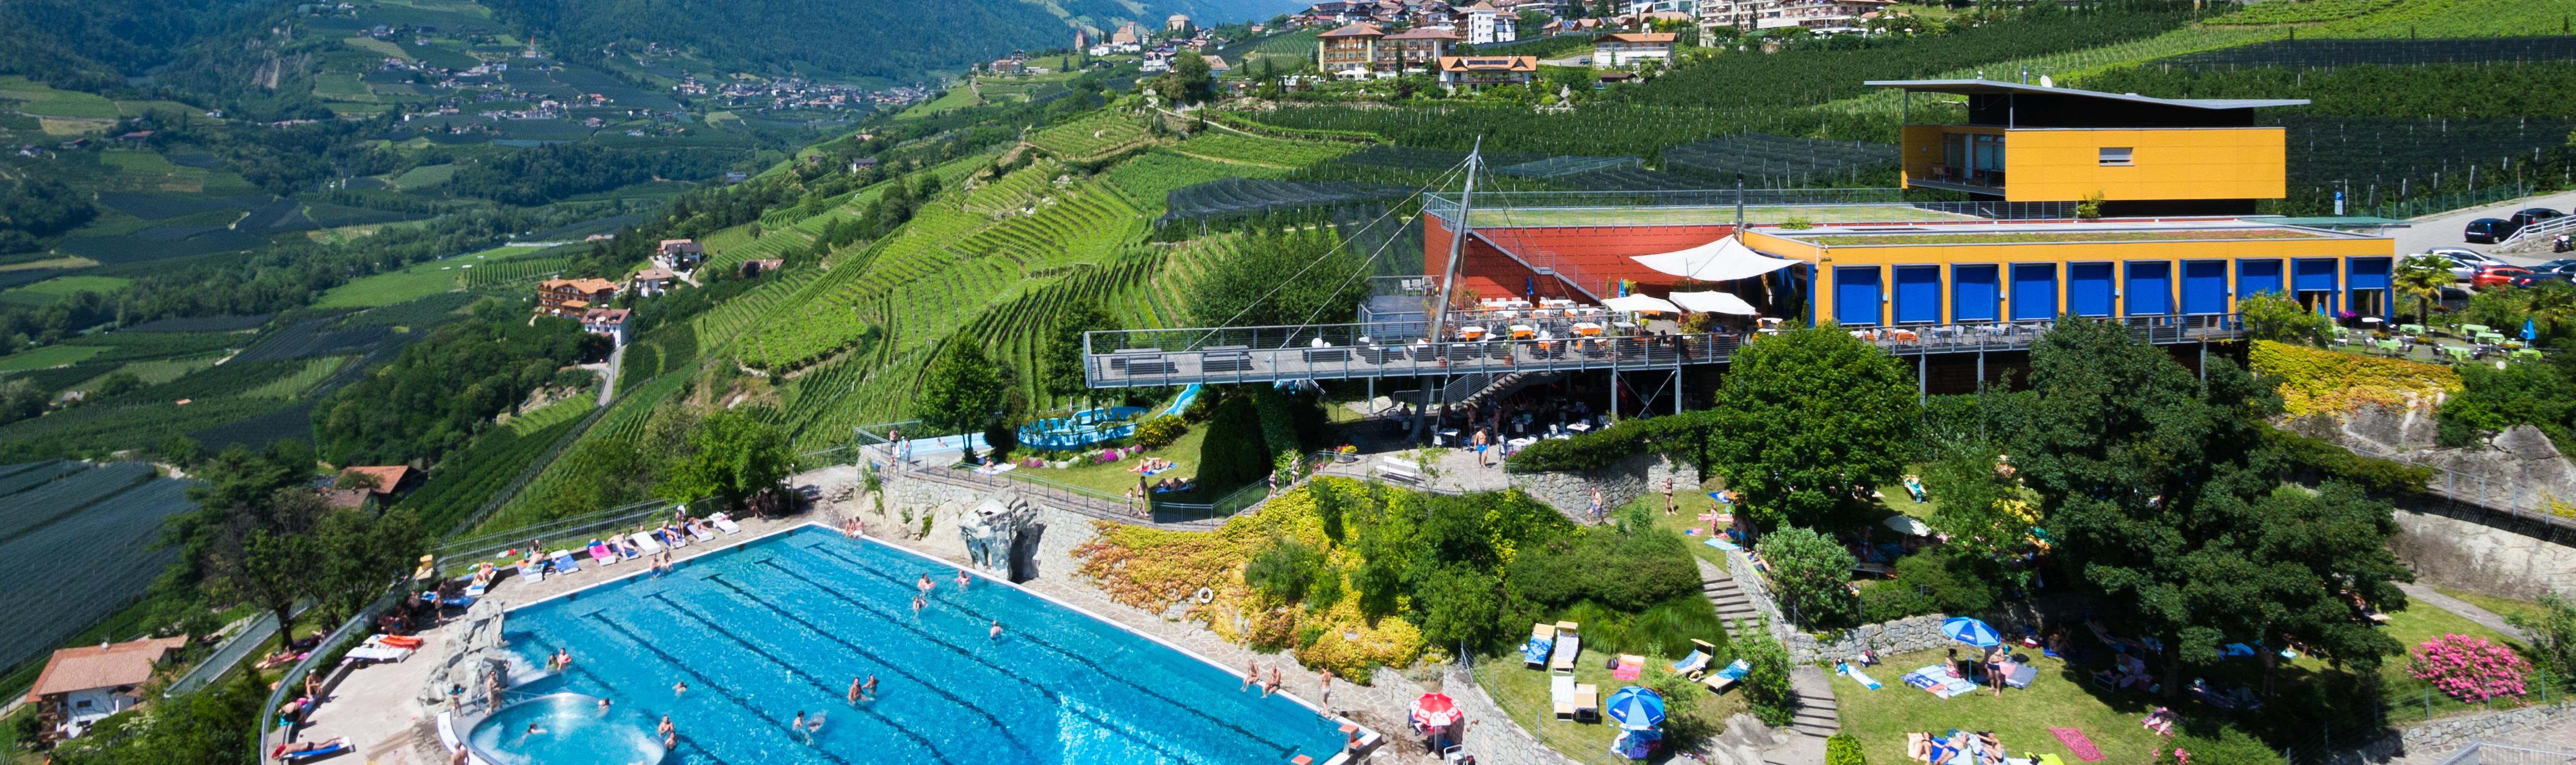 Panorama-Freibad in Schenna, Südtirol